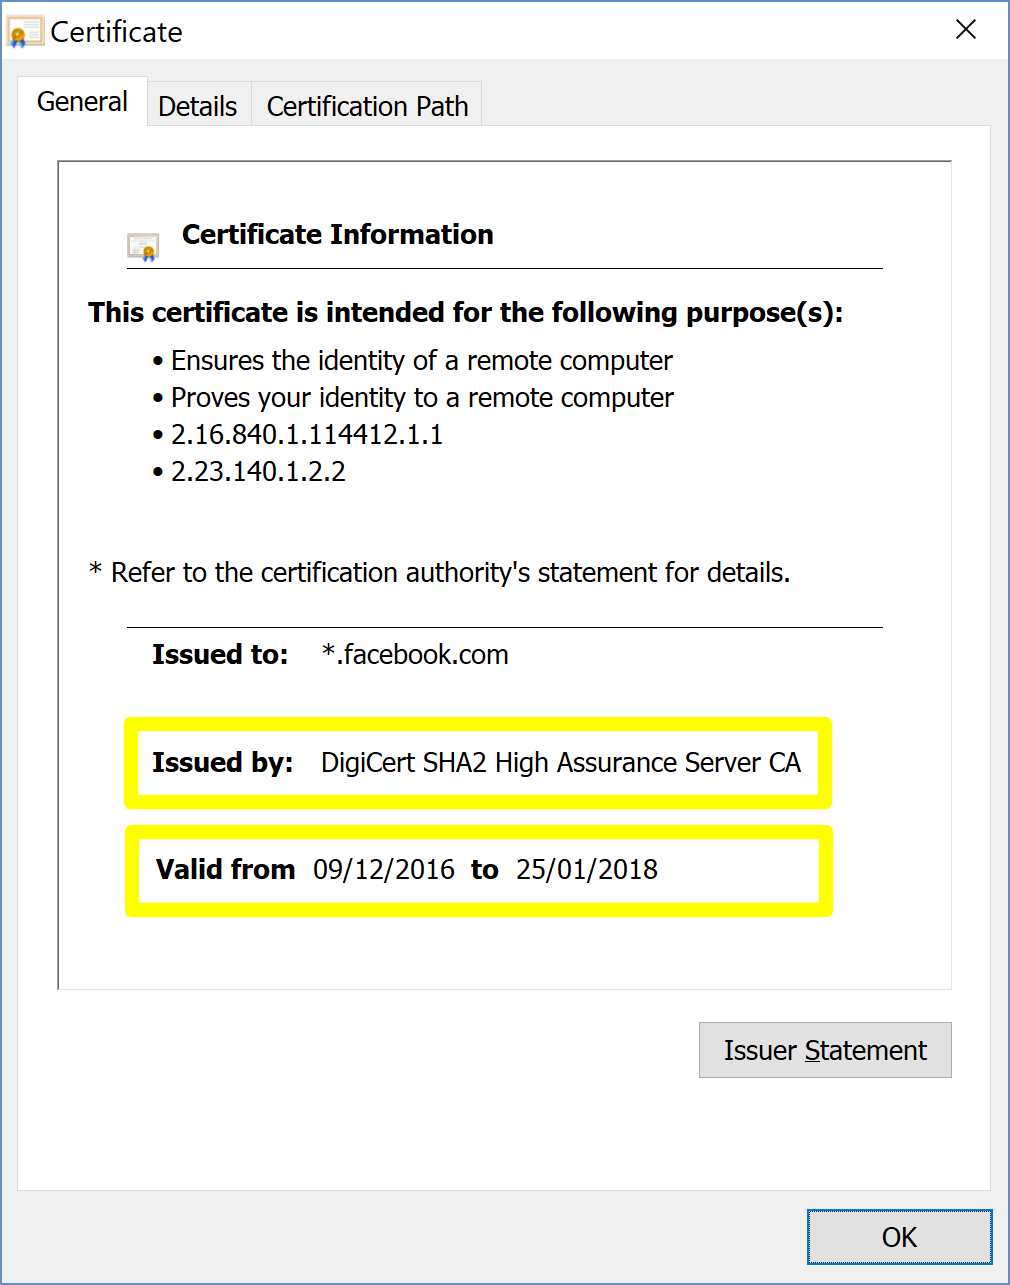 DigiCert SHA2 High Assurance Server CA